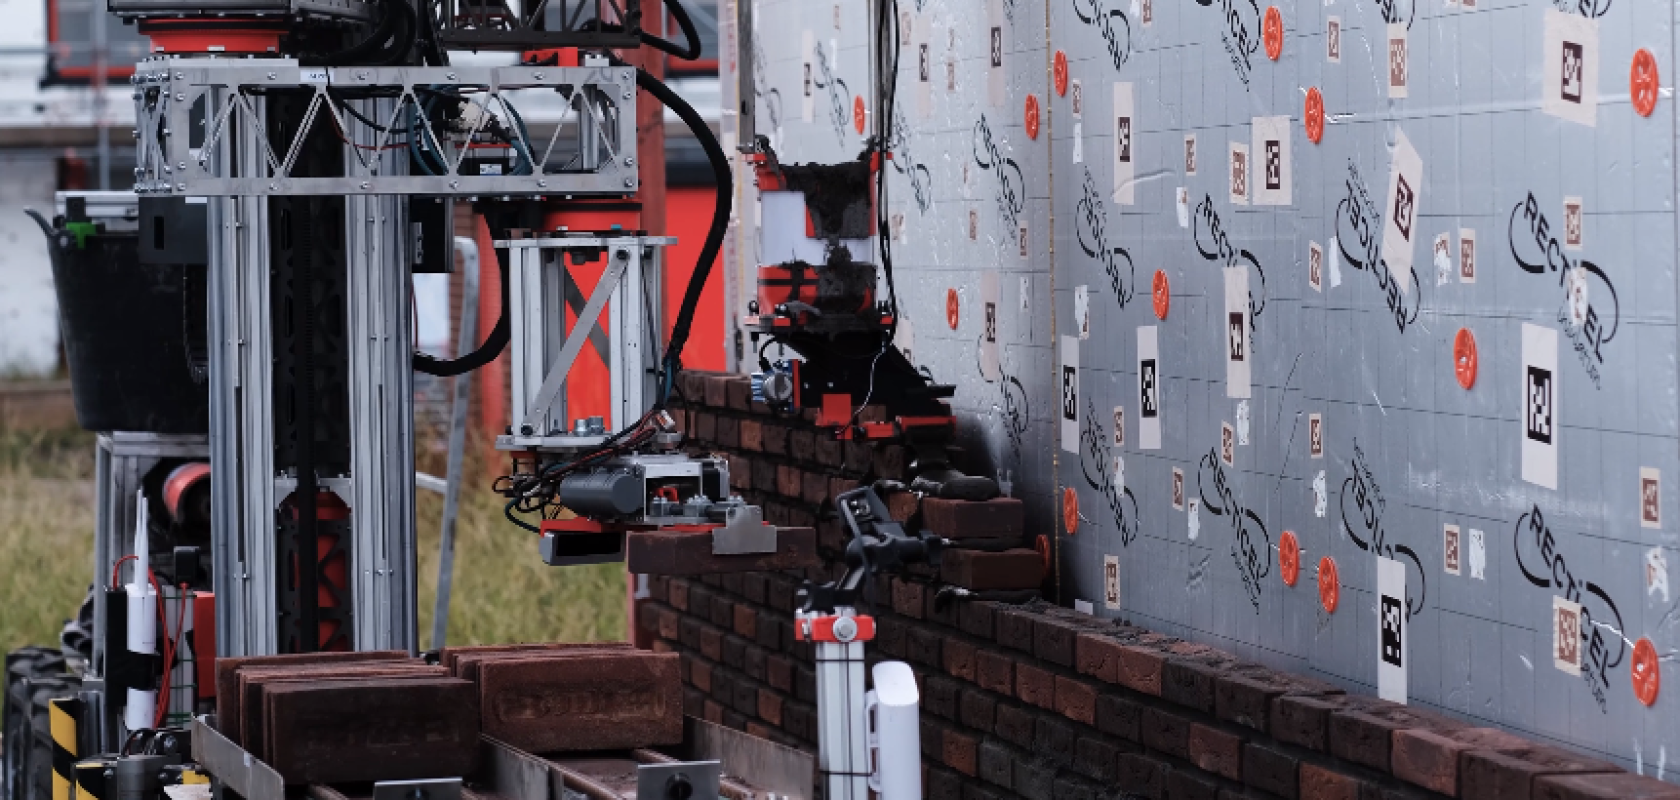 Automated brick laying robot